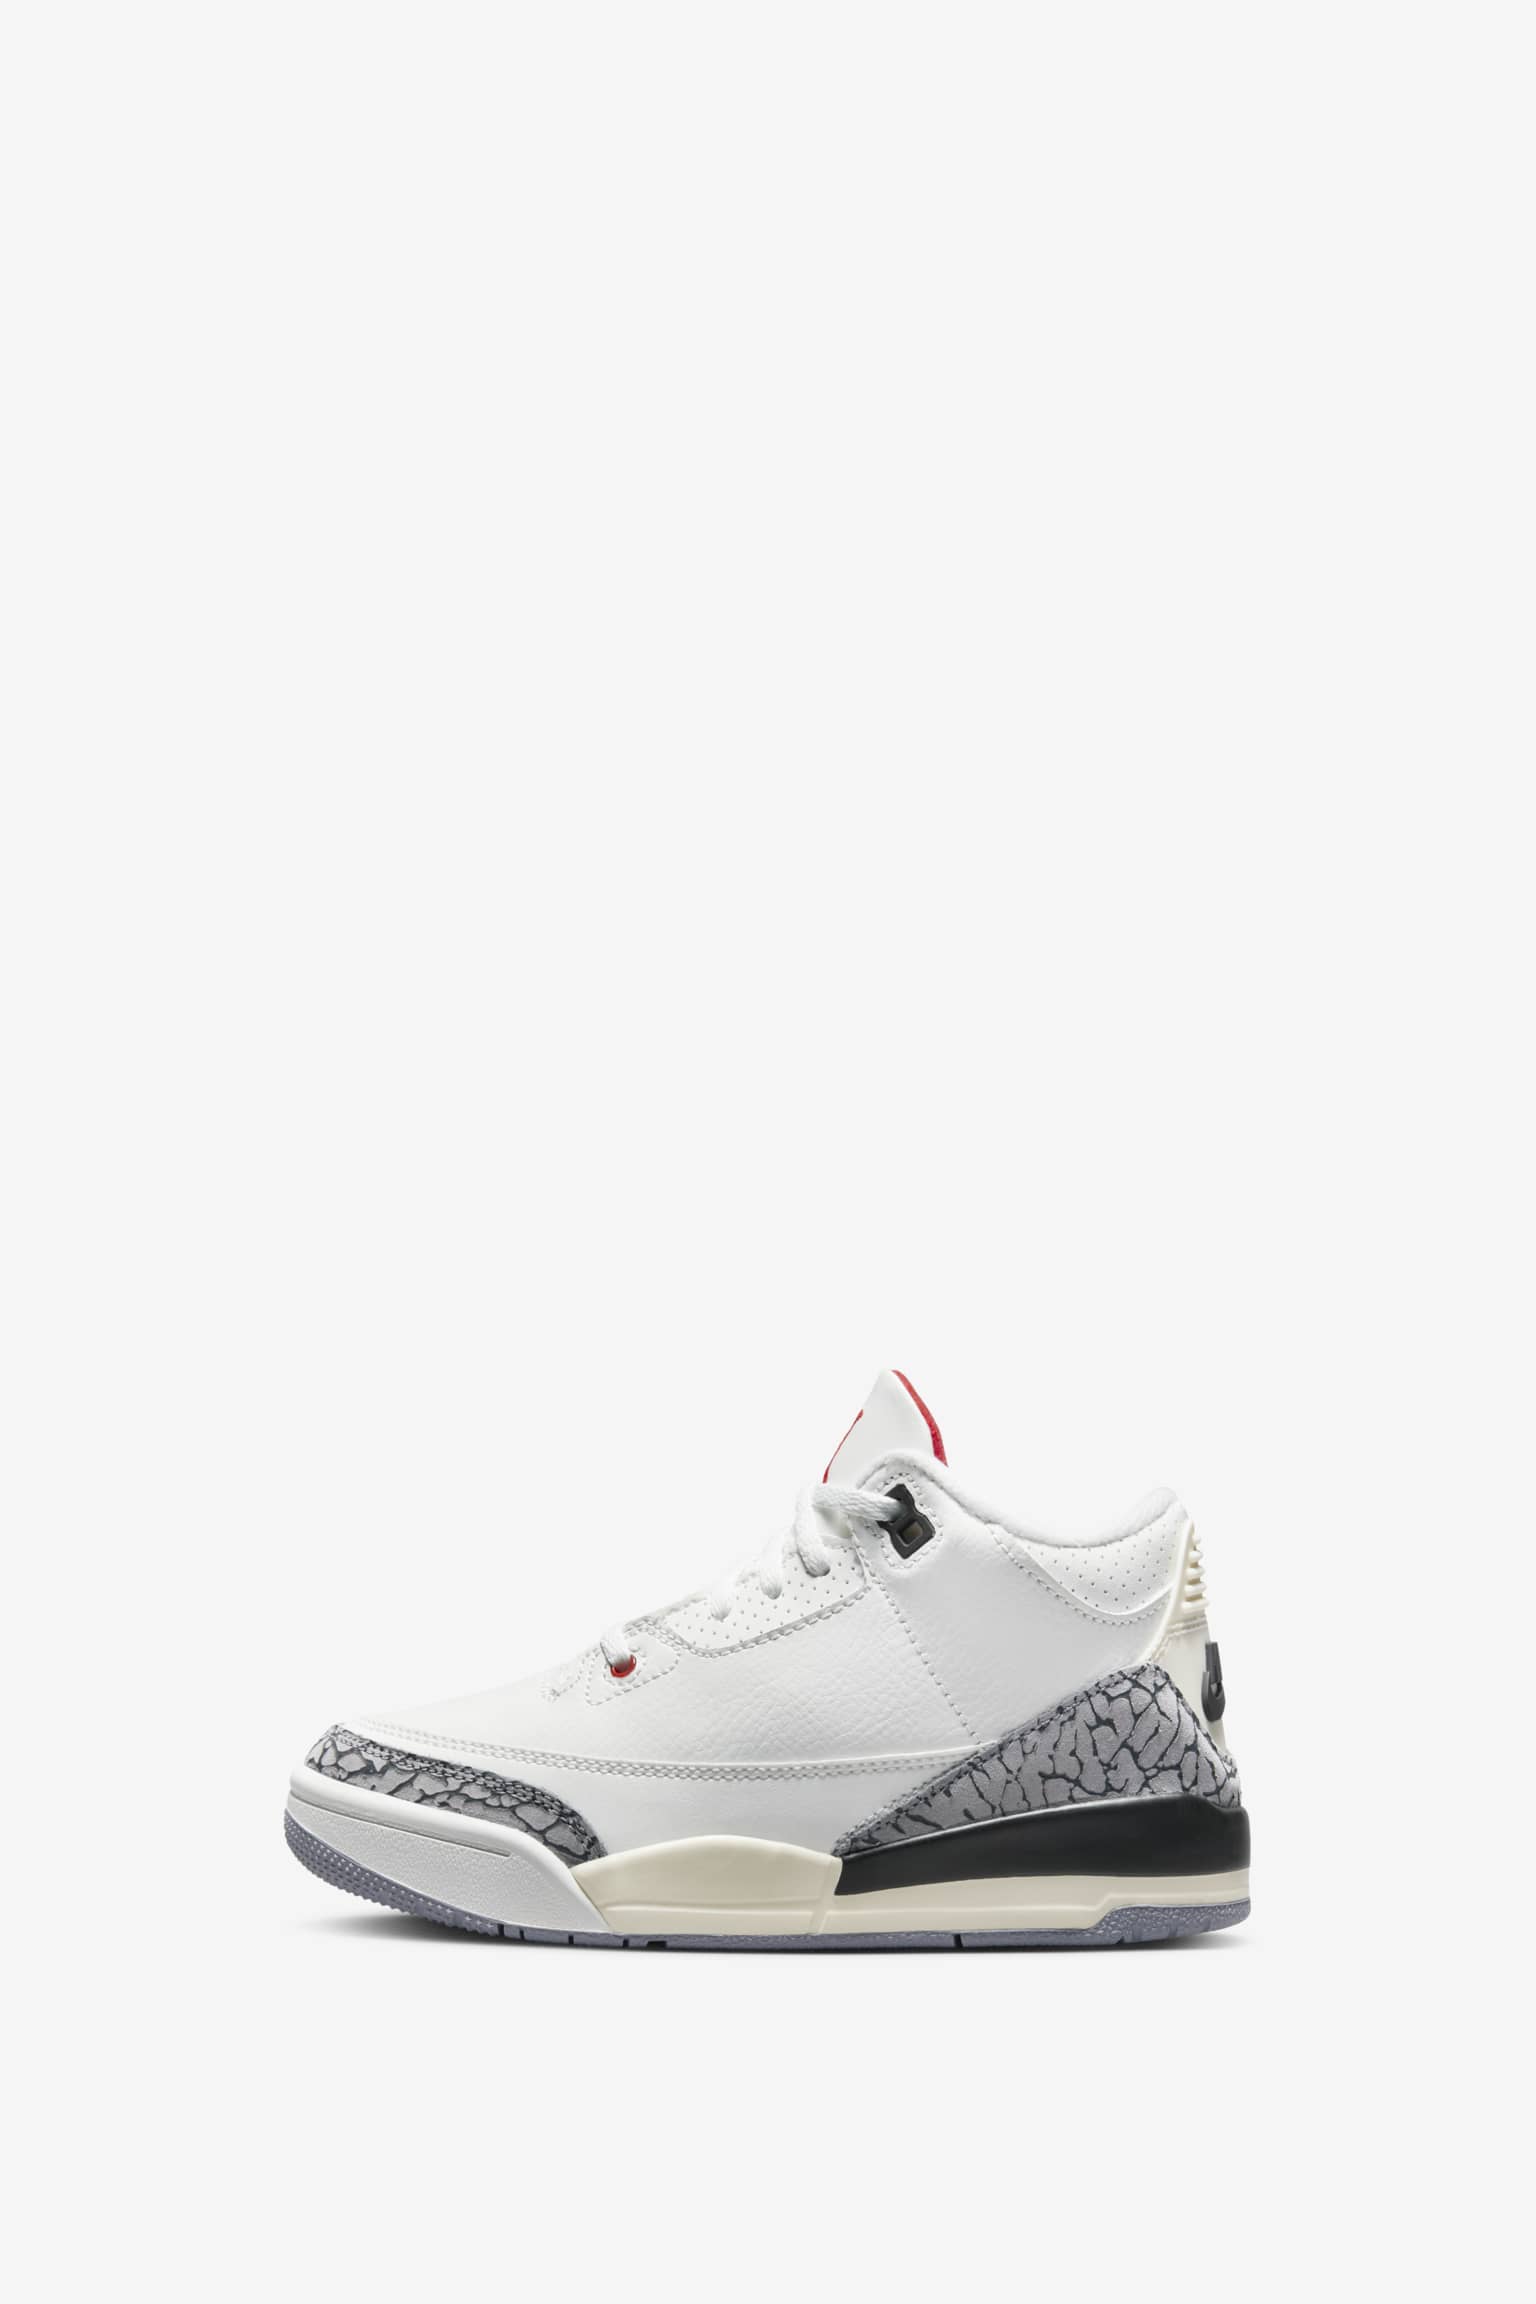 Fecha de lanzamiento de las Air Jordan 3 Cement Reimagined" Nike